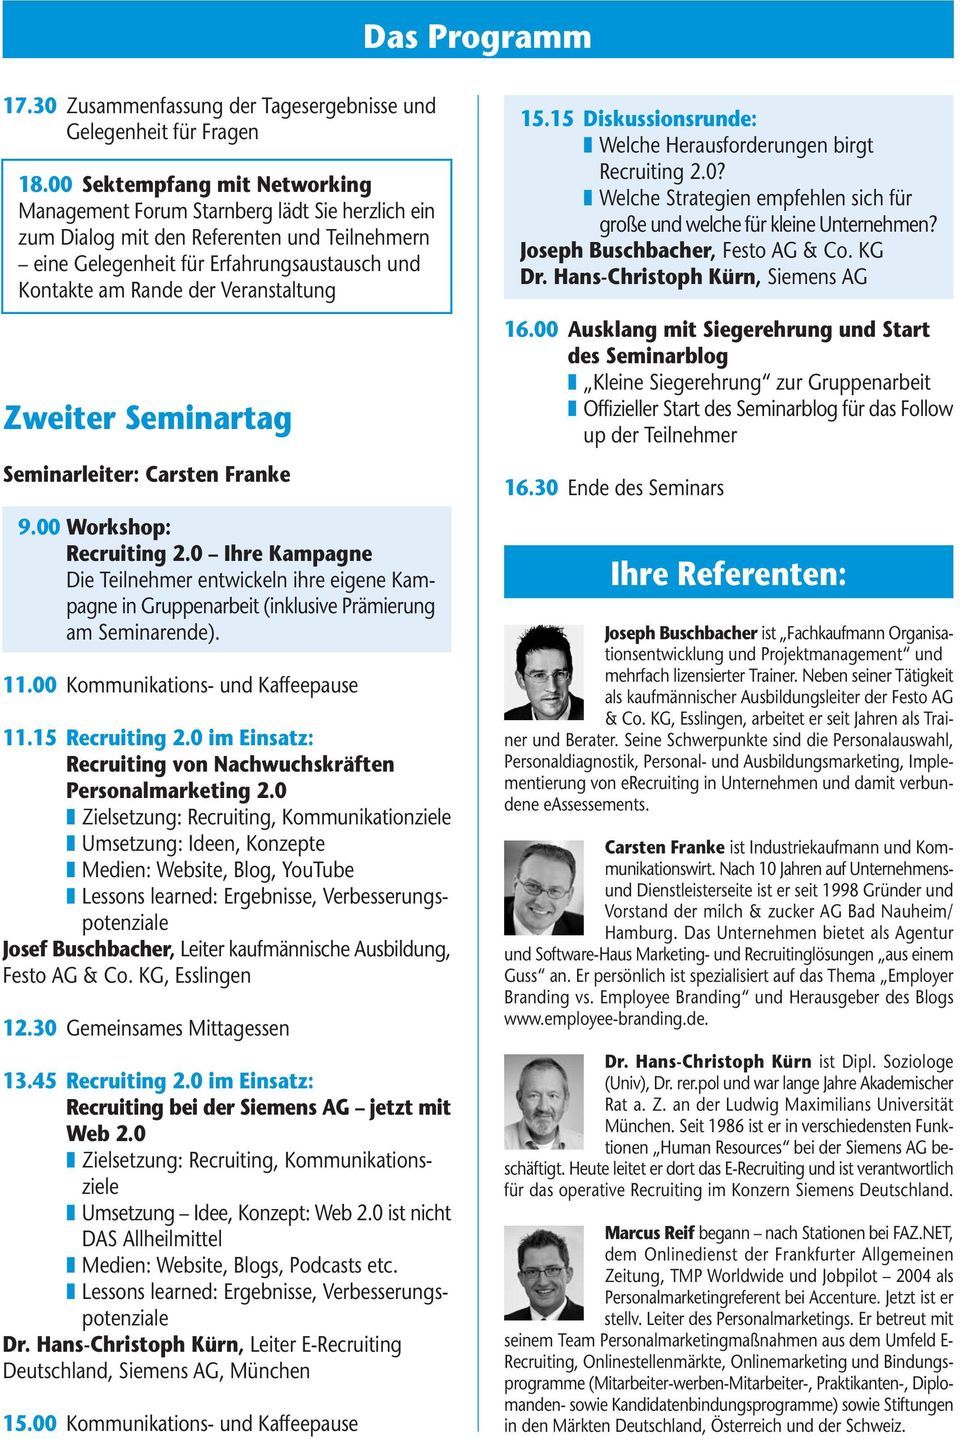 Veranstaltung Zweiter Seminartag Seminarleiter: Carsten Franke 9.00 Workshop: Recruiting 2.